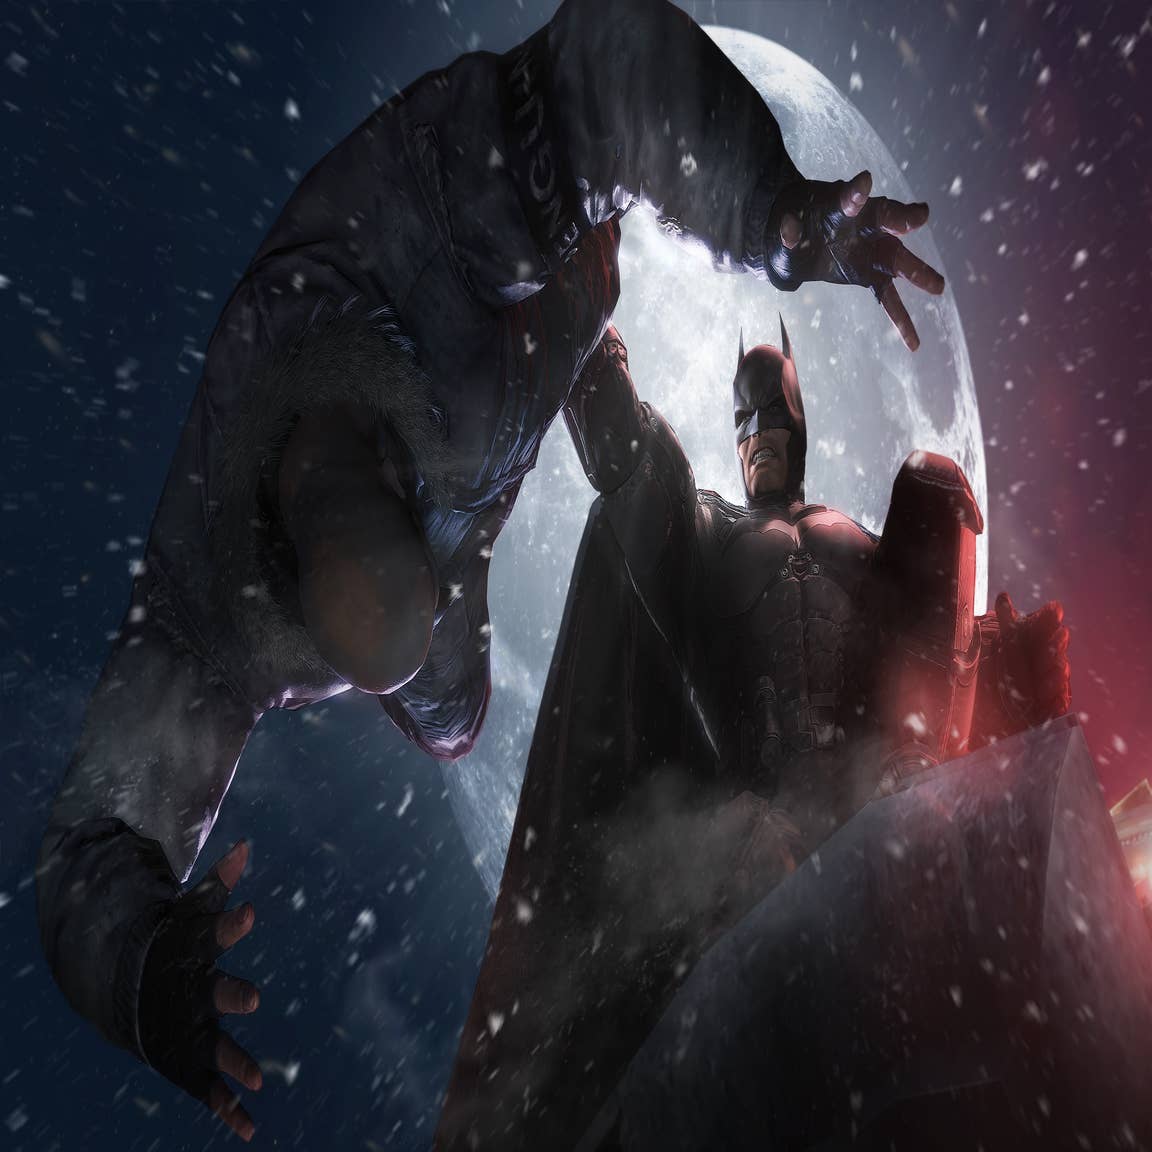 Netherrealm Announces 'Arkham Origins' Game For iOS